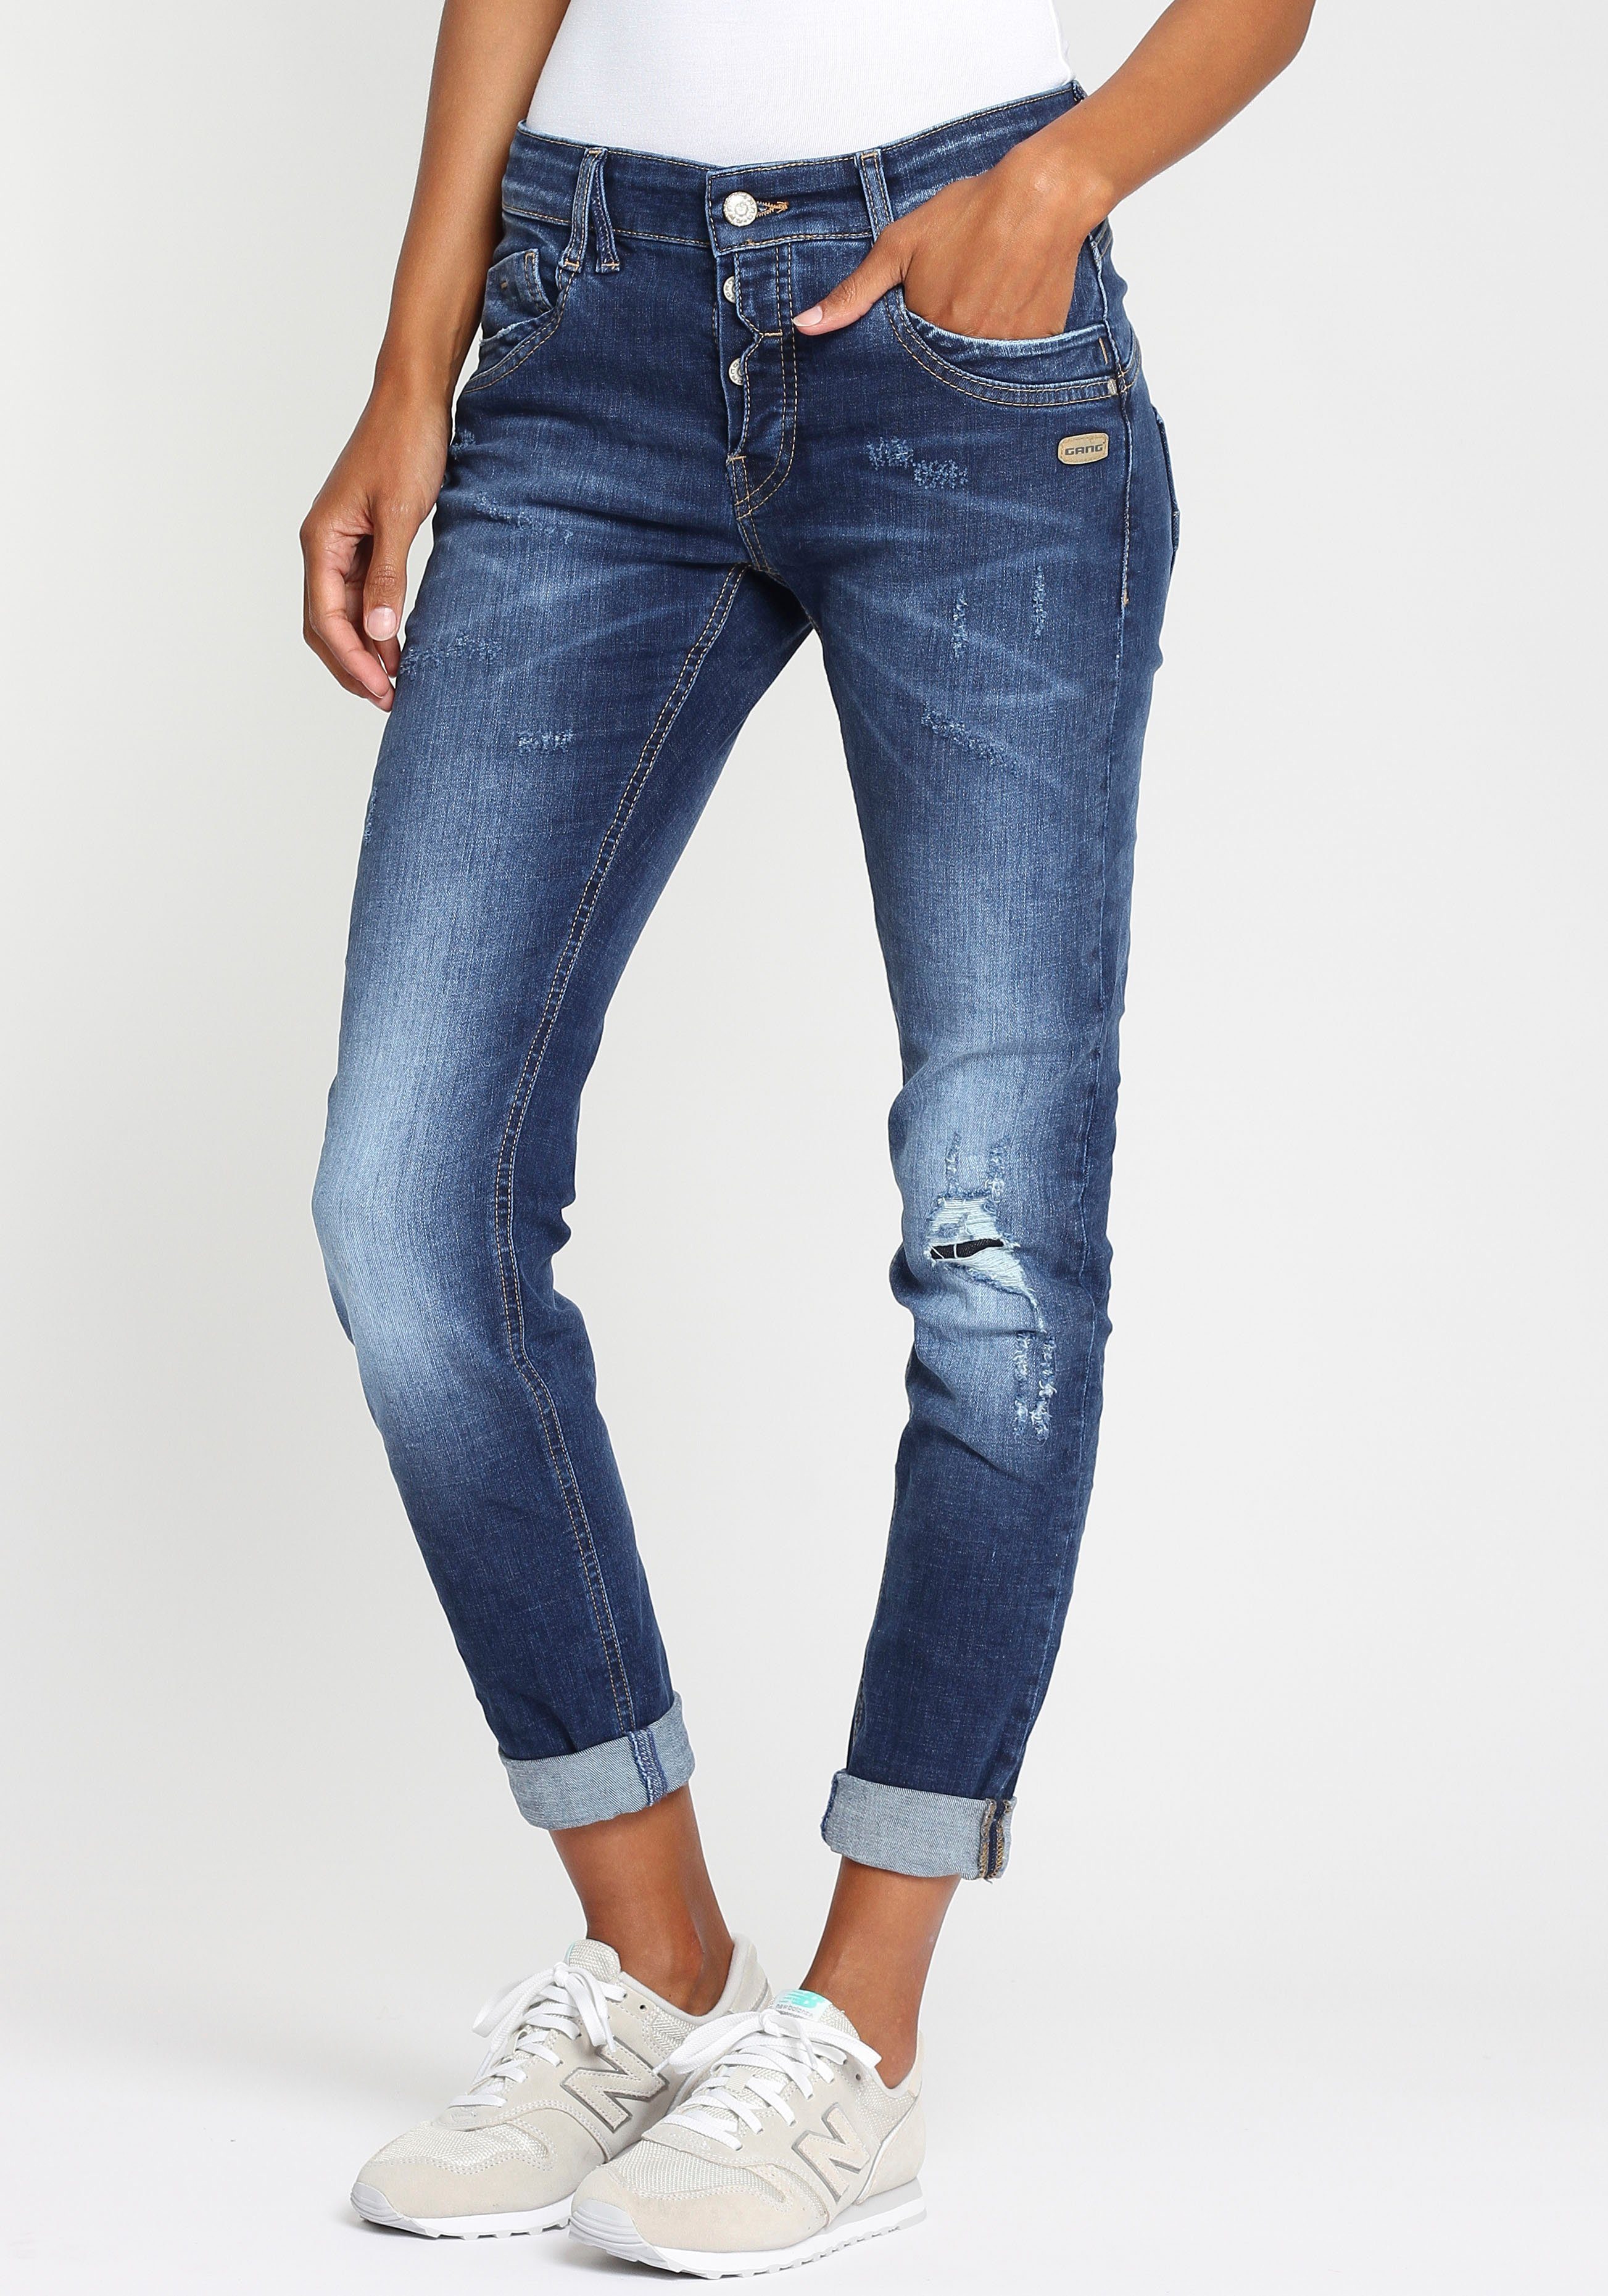 Moderne Jeans für Damen kaufen » Moderne Jeanshosen | OTTO